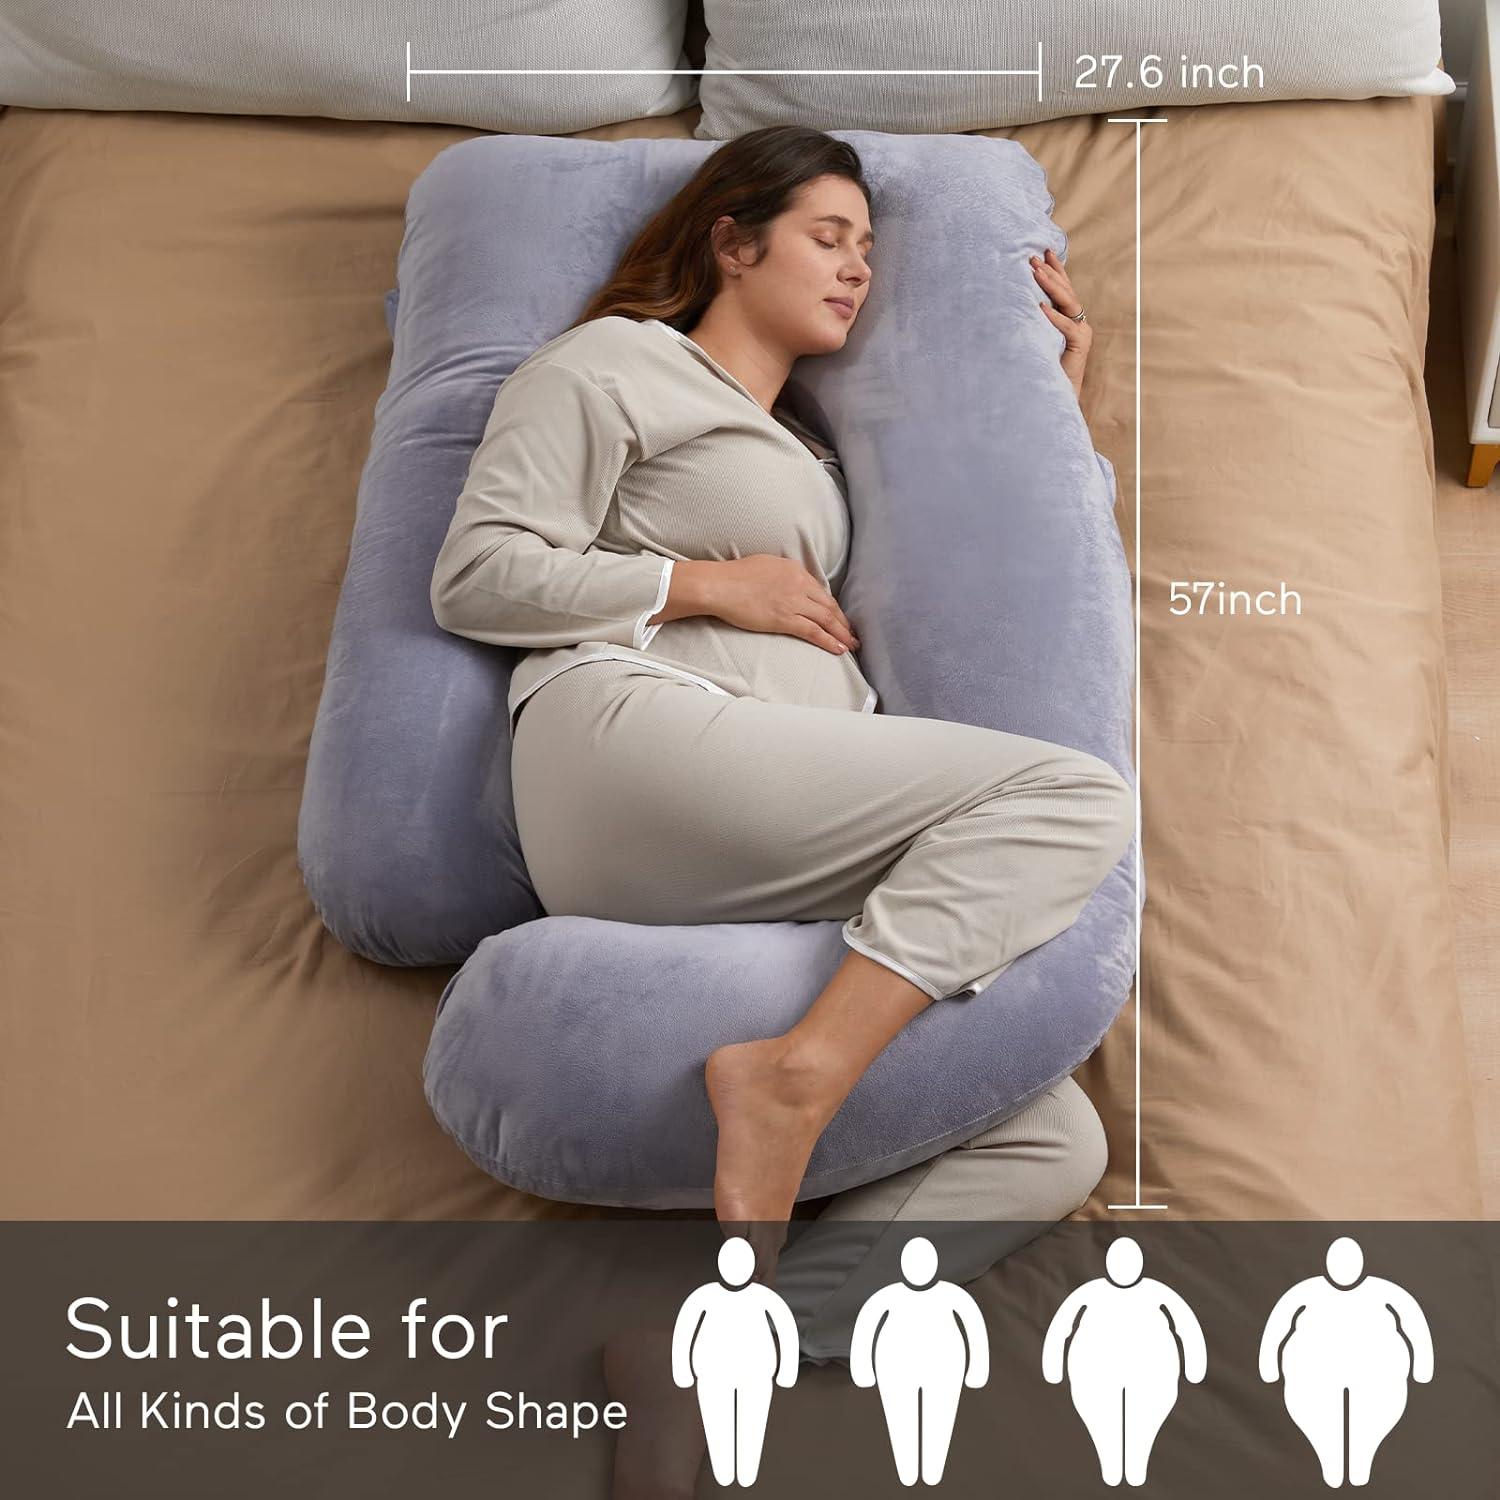 Almohada para embarazo, en forma de U, con funda extraíble, color gris - VIRTUAL MUEBLES